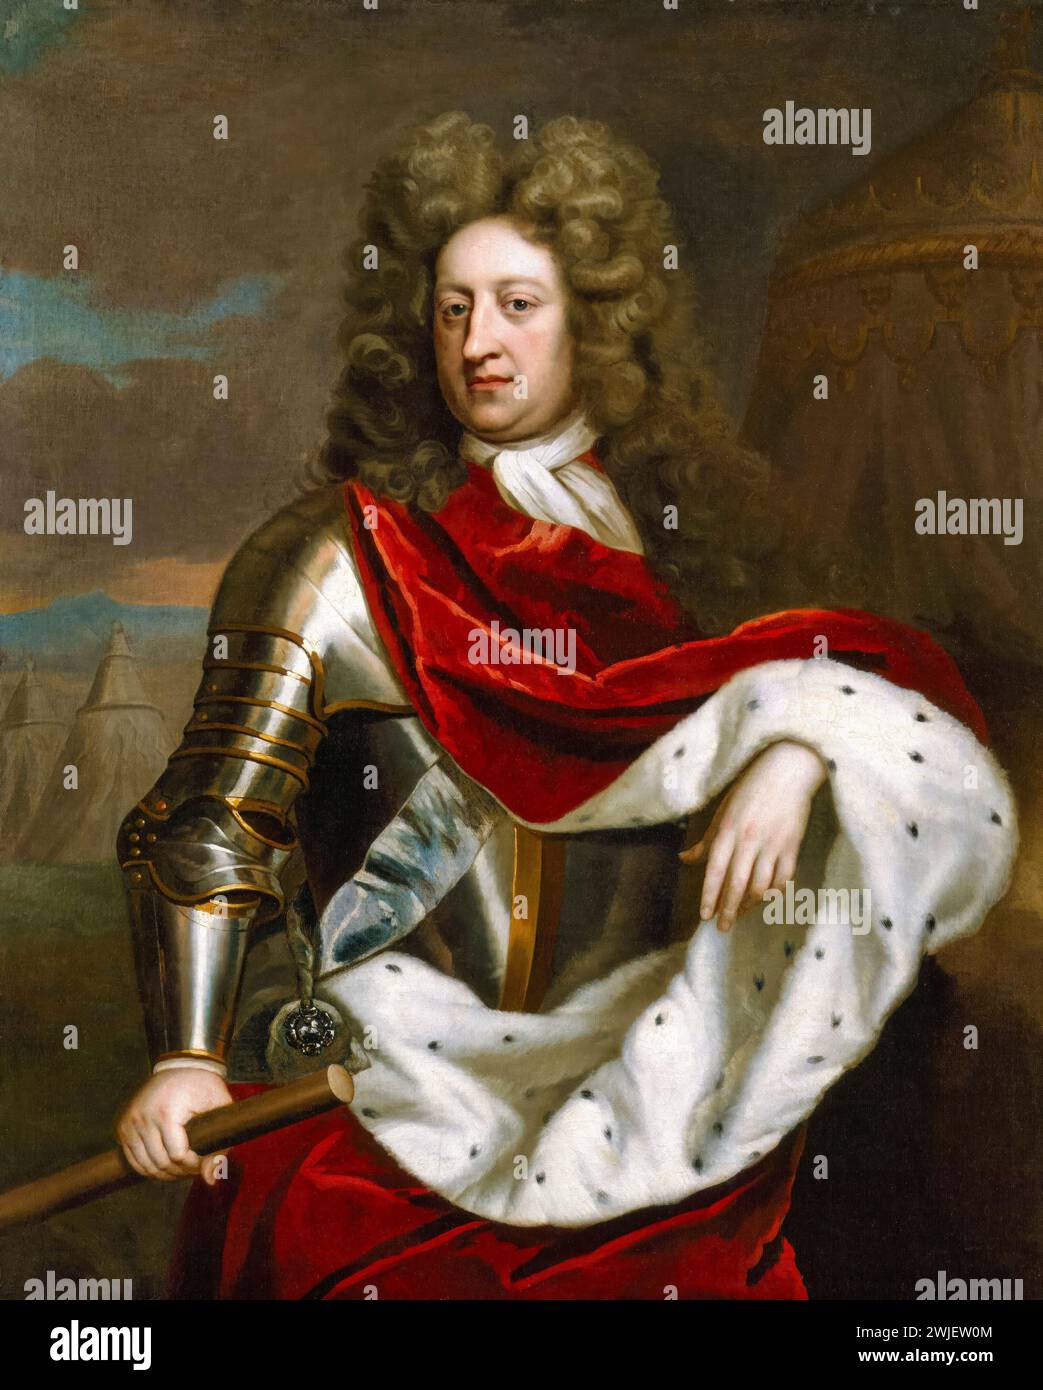 Principe Giorgio di Danimarca (1653-1708), duca di Cumberland, consorte della regina Anna d'Inghilterra (poi Gran Bretagna), ritratto dipinto ad olio su tela dopo Michael Dahl, circa 1705 Foto Stock